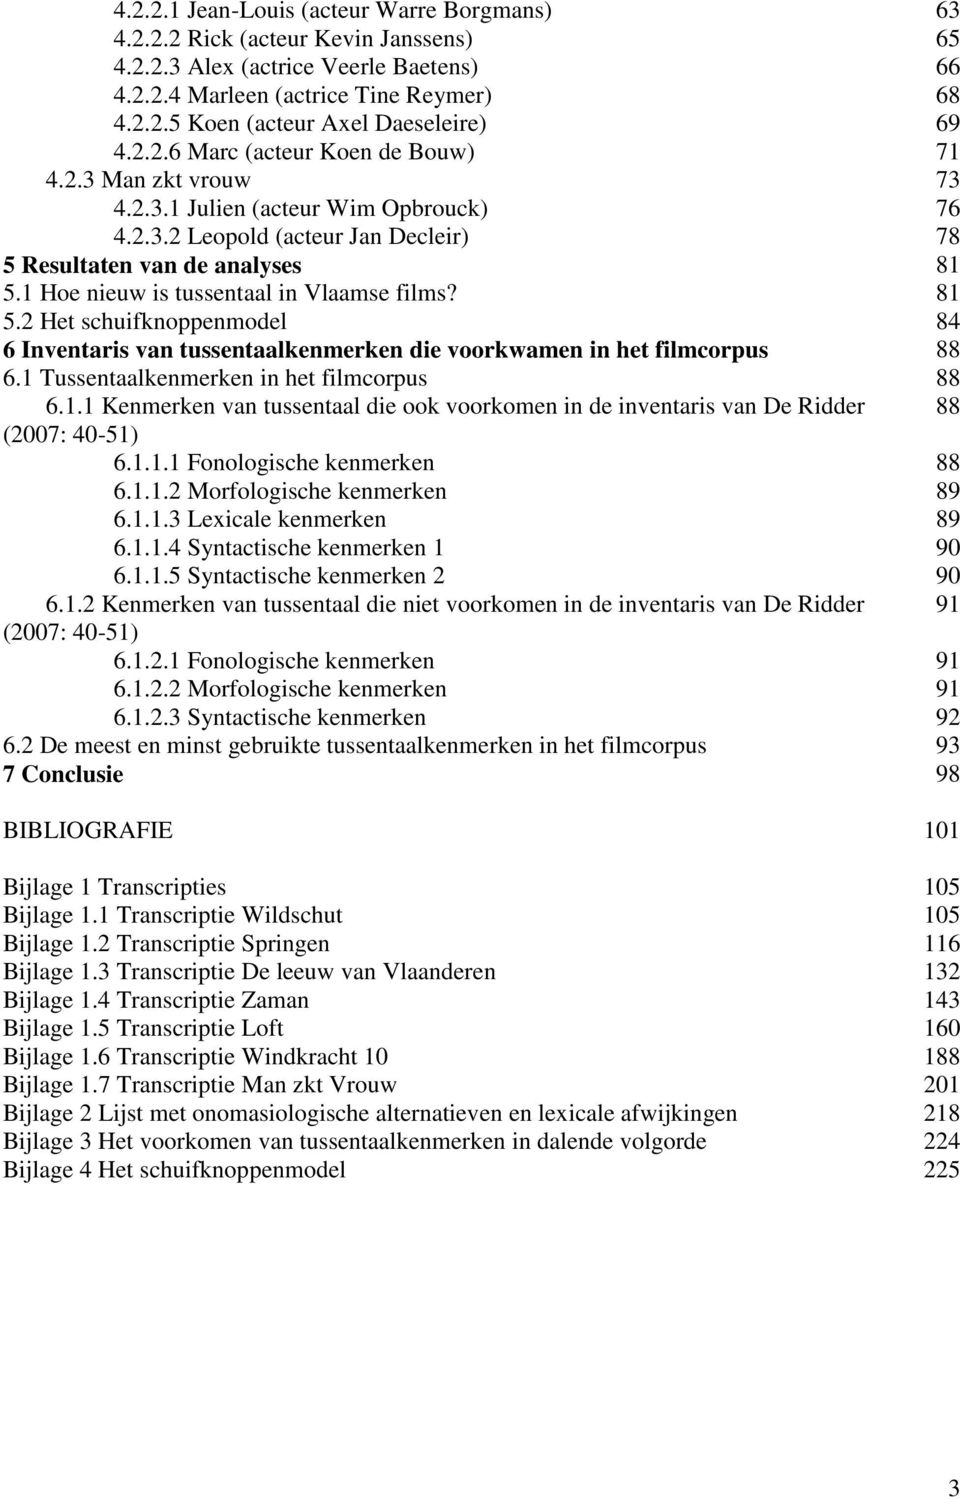 1 Hoe nieuw is tussentaal in Vlaamse films? 81 5.2 Het schuifknoppenmodel 84 6 Inventaris van tussentaalkenmerken die voorkwamen in het filmcorpus 88 6.1 Tussentaalkenmerken in het filmcorpus 88 6.1.1 Kenmerken van tussentaal die ook voorkomen in de inventaris van De Ridder 88 (2007: 40-51) 6.